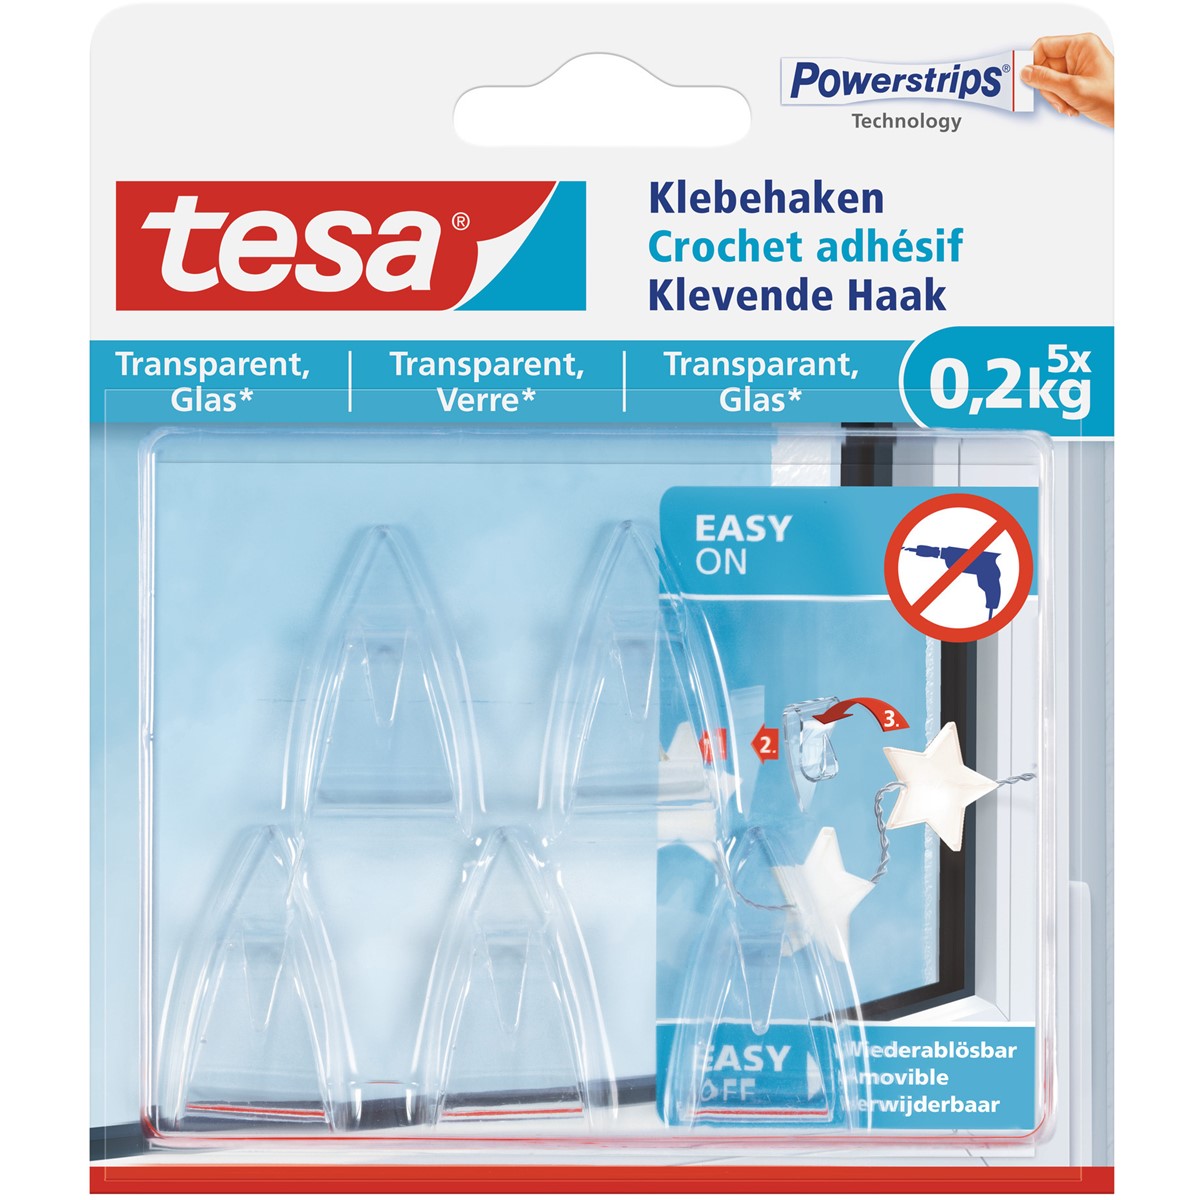 tesa 77734-00000 - Powerstrips Klebehaken für transparente